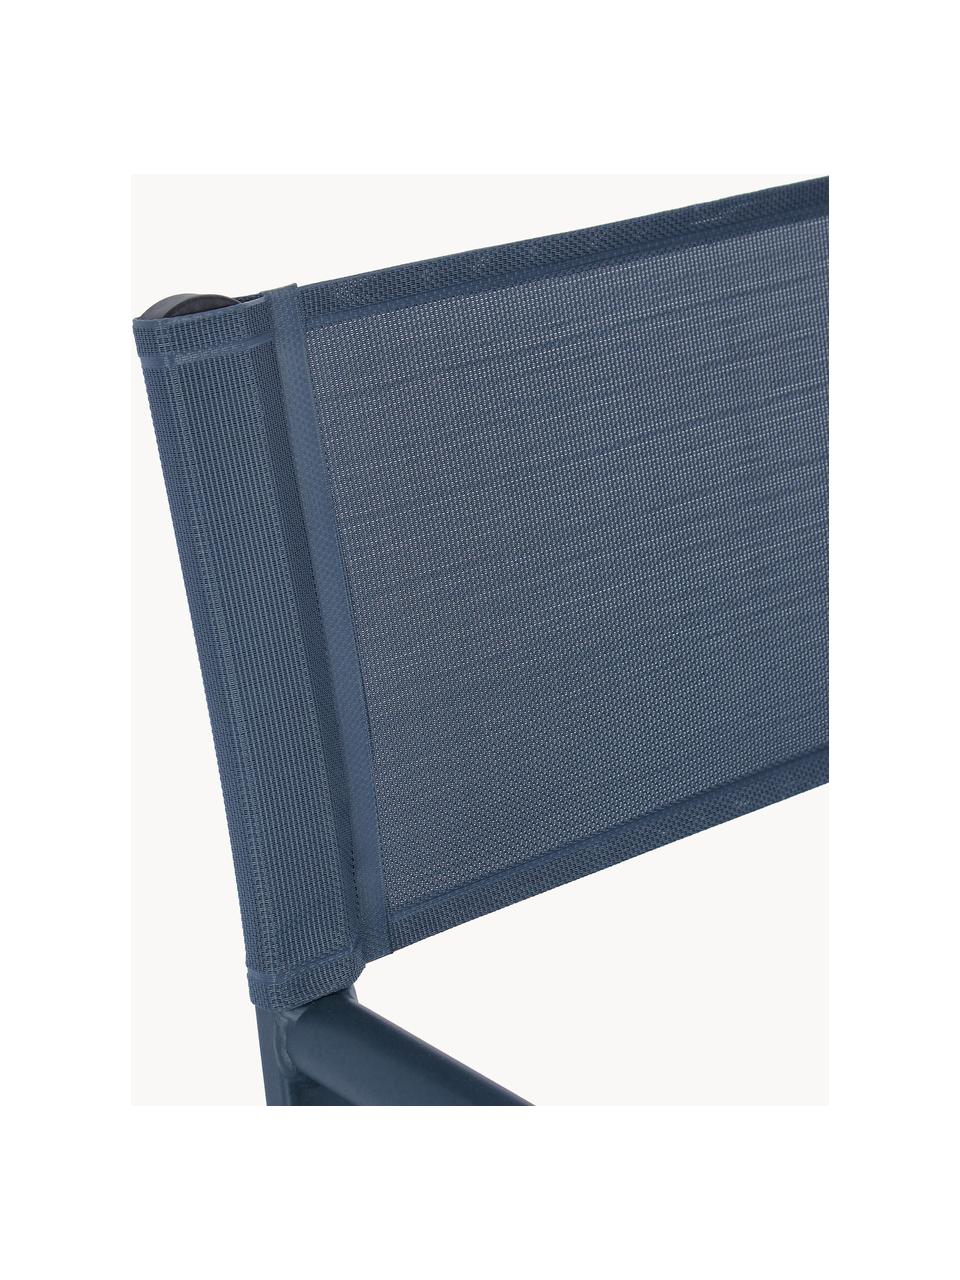 Silla plegable para exterior Taylor, Asiento: plástico (610 g/m²), Estructura: aluminio con pintura en p, Azul oscuro, An 55 x F 45 cm